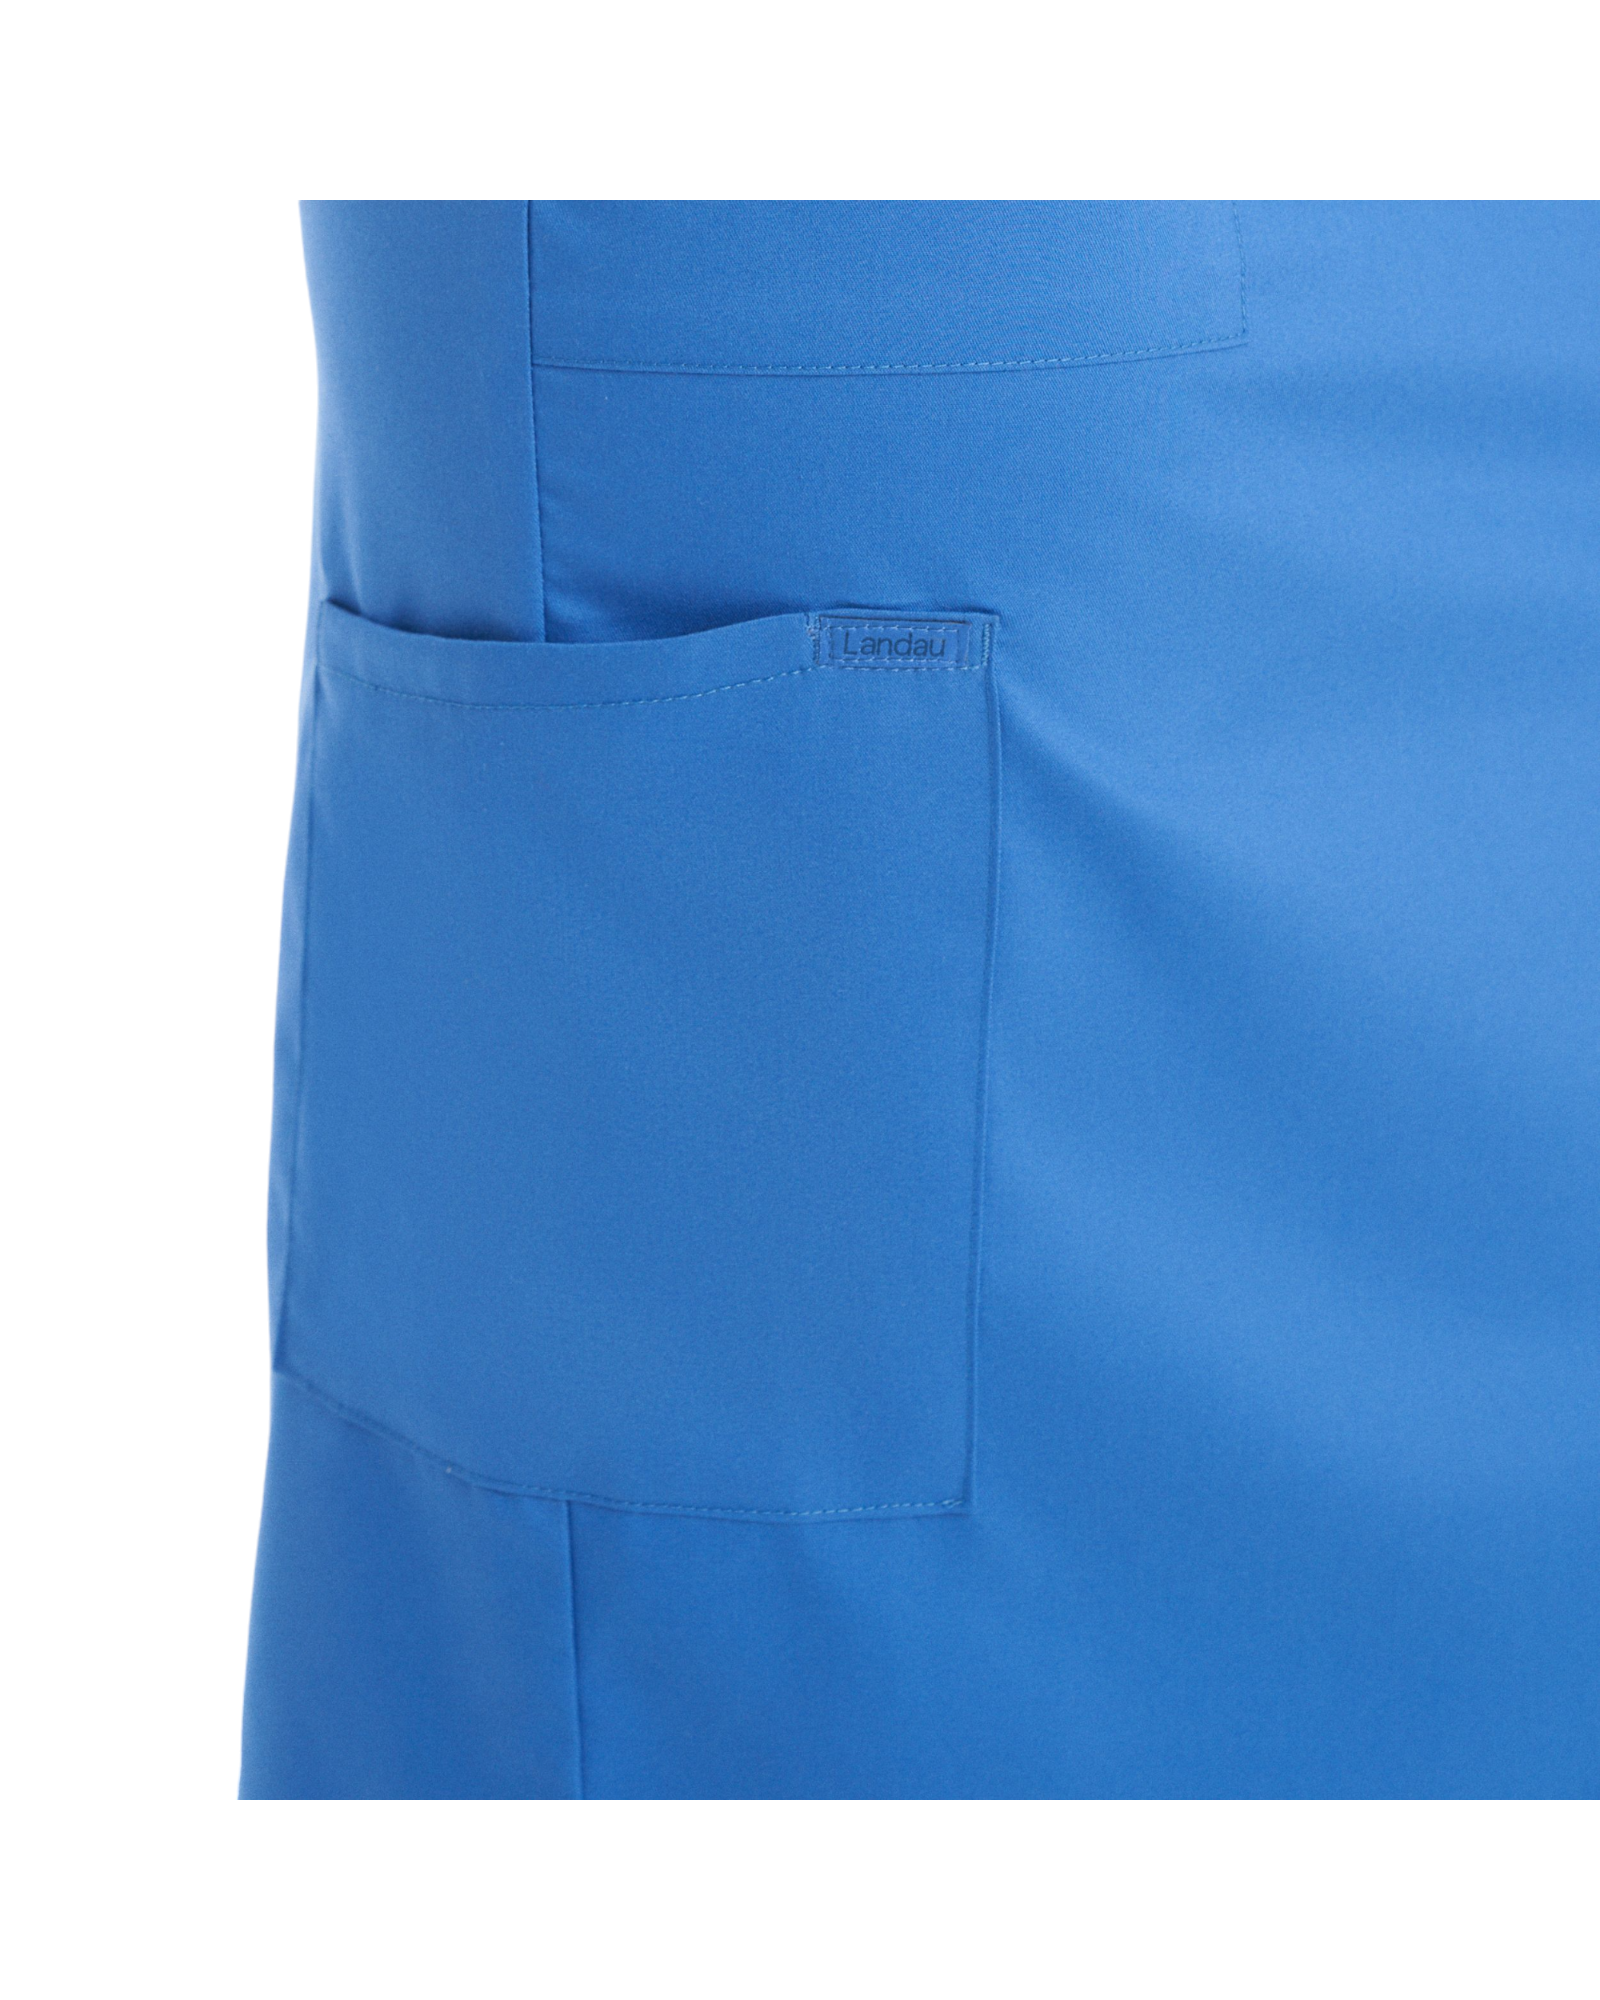 Vue de la poche cargo de la jupe de style cargo 6 poches pour femmes Landau Proflex #LK600-OS